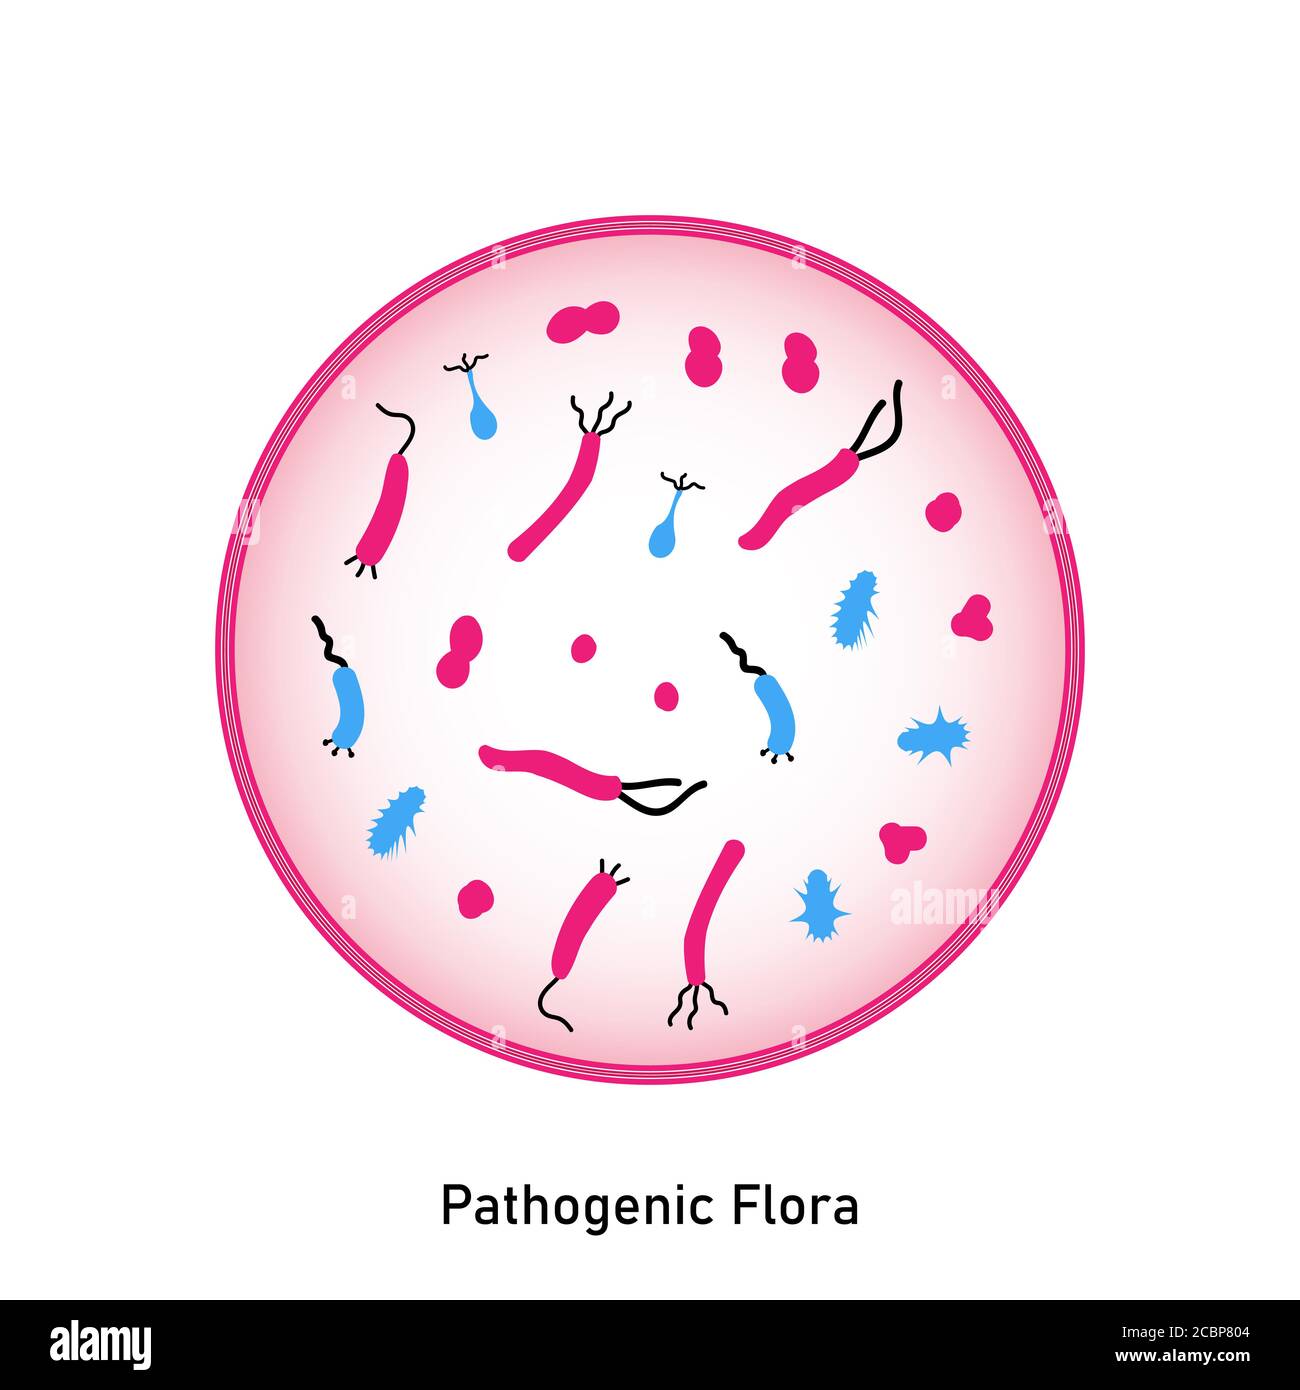 Bakterieller Mikroorganismus im Kreis. Pathogene Flora der Haut und Schleimhäute. Flacher Style. Keime, primitive Organismen. Störung des normalen f Stock Vektor